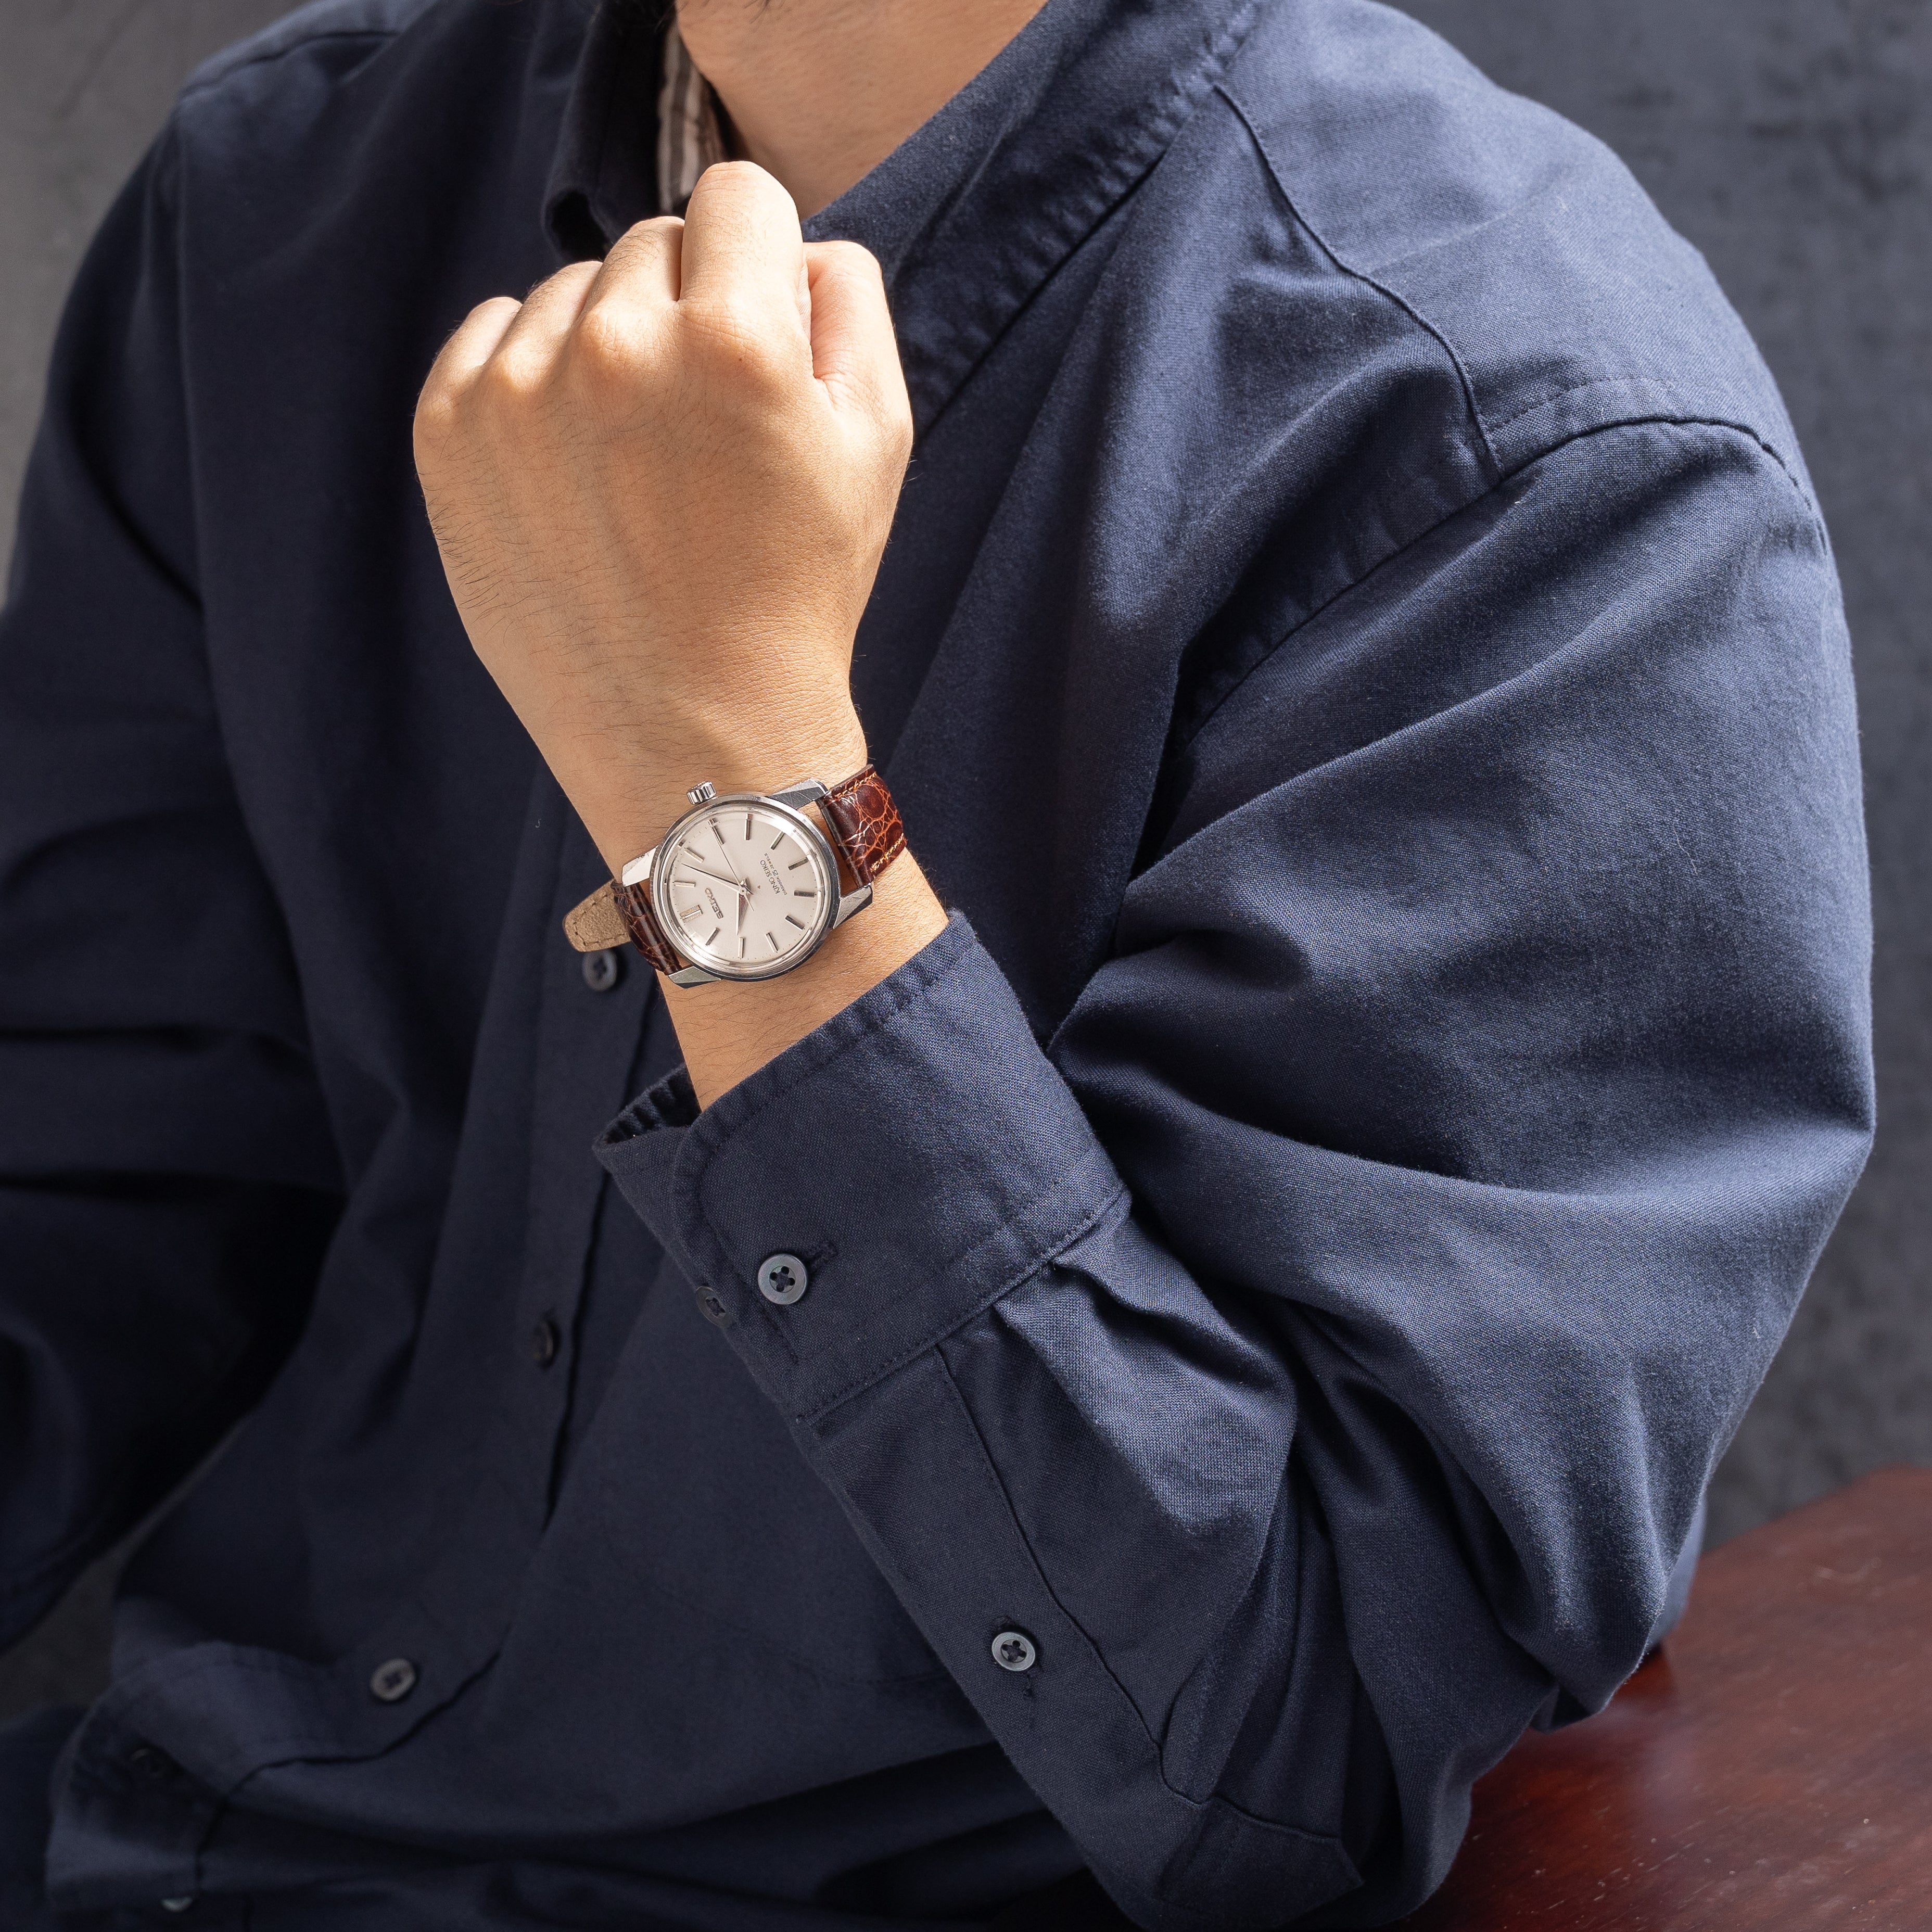 1966年製 キングセイコー 手巻き 25石 44-9990 盾メダリオン - 腕時計 